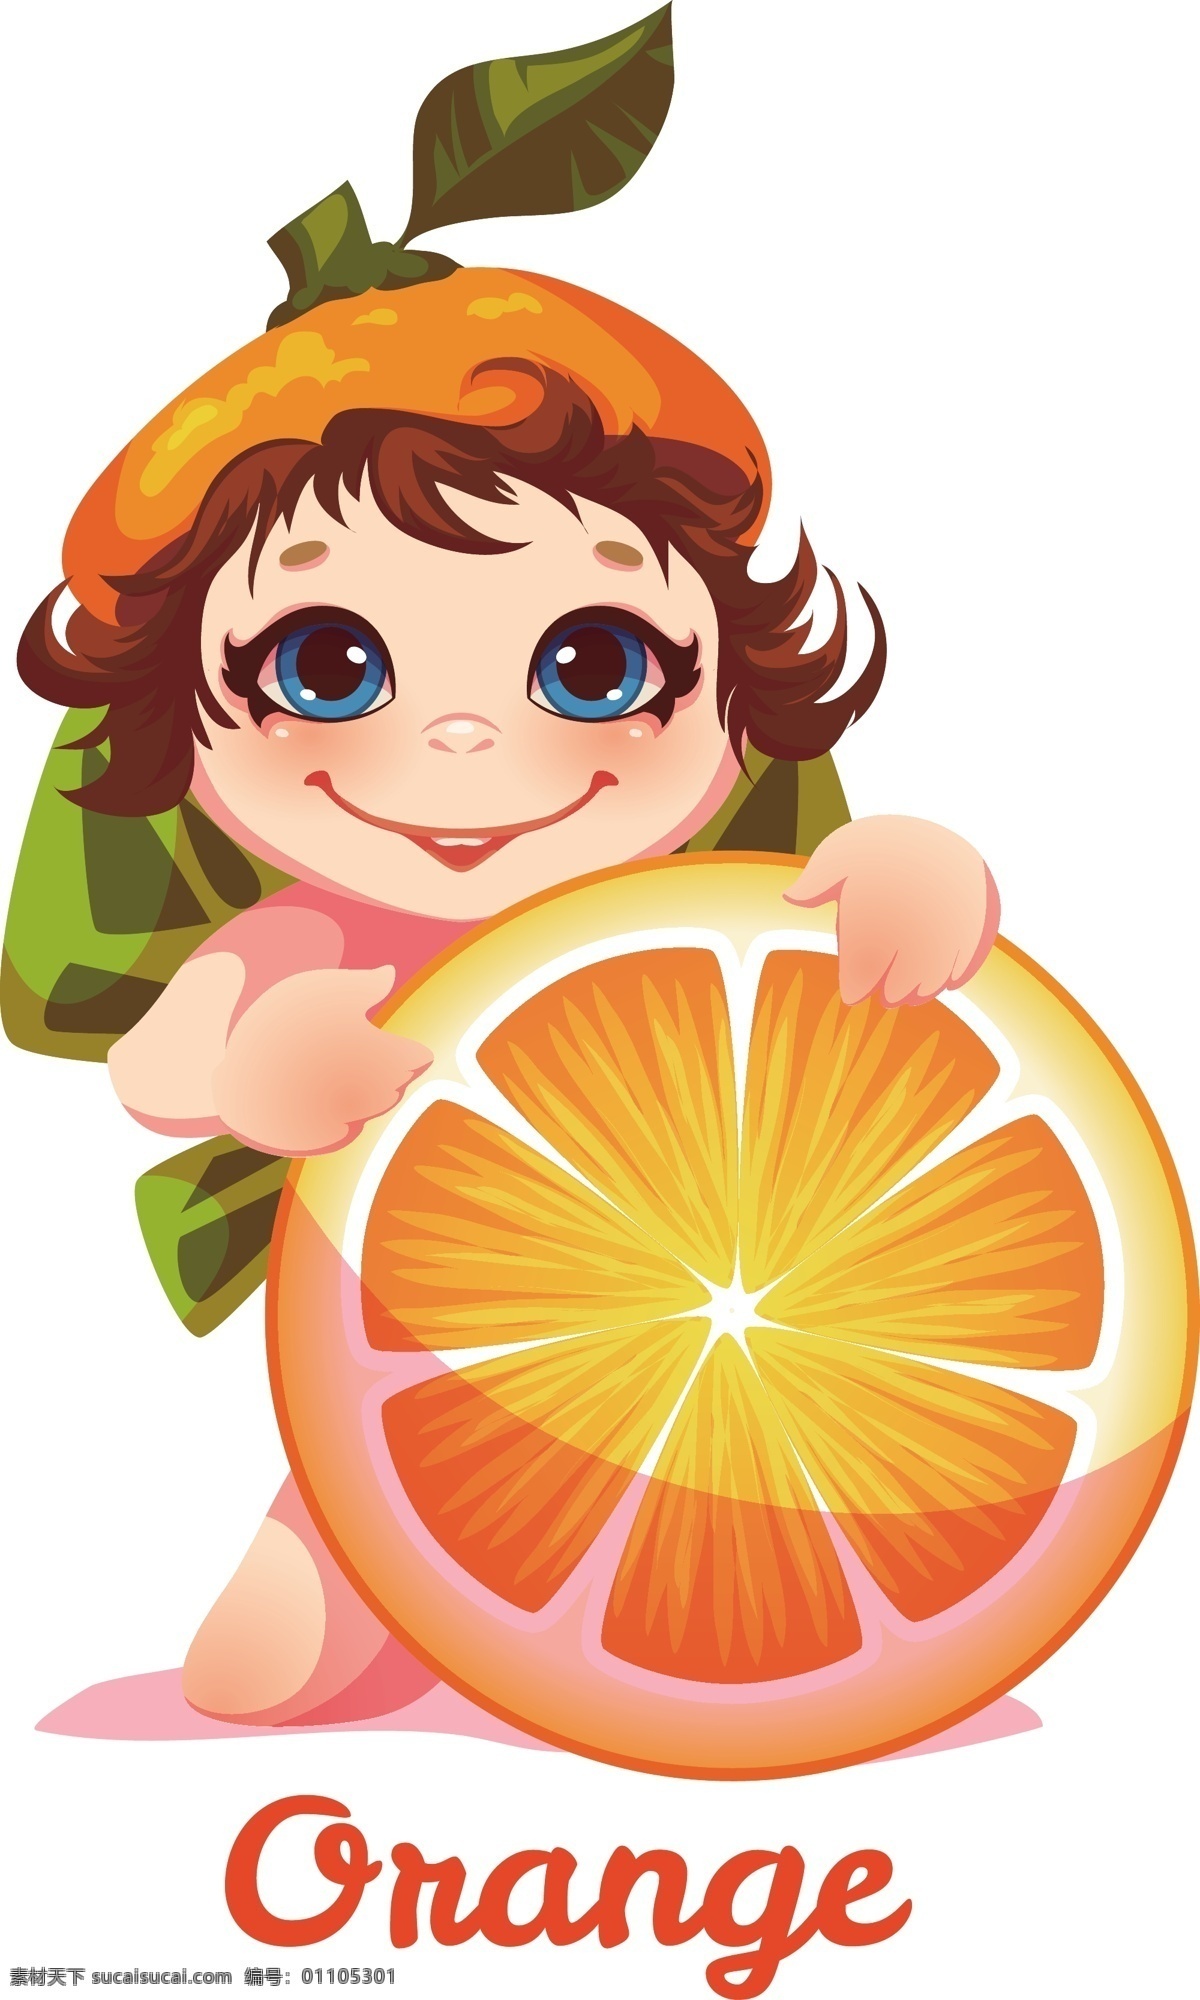 香橙 小女孩 卡通 矢量 可爱 女孩 橙色 英文 矢量素材 设计素材 平面素材